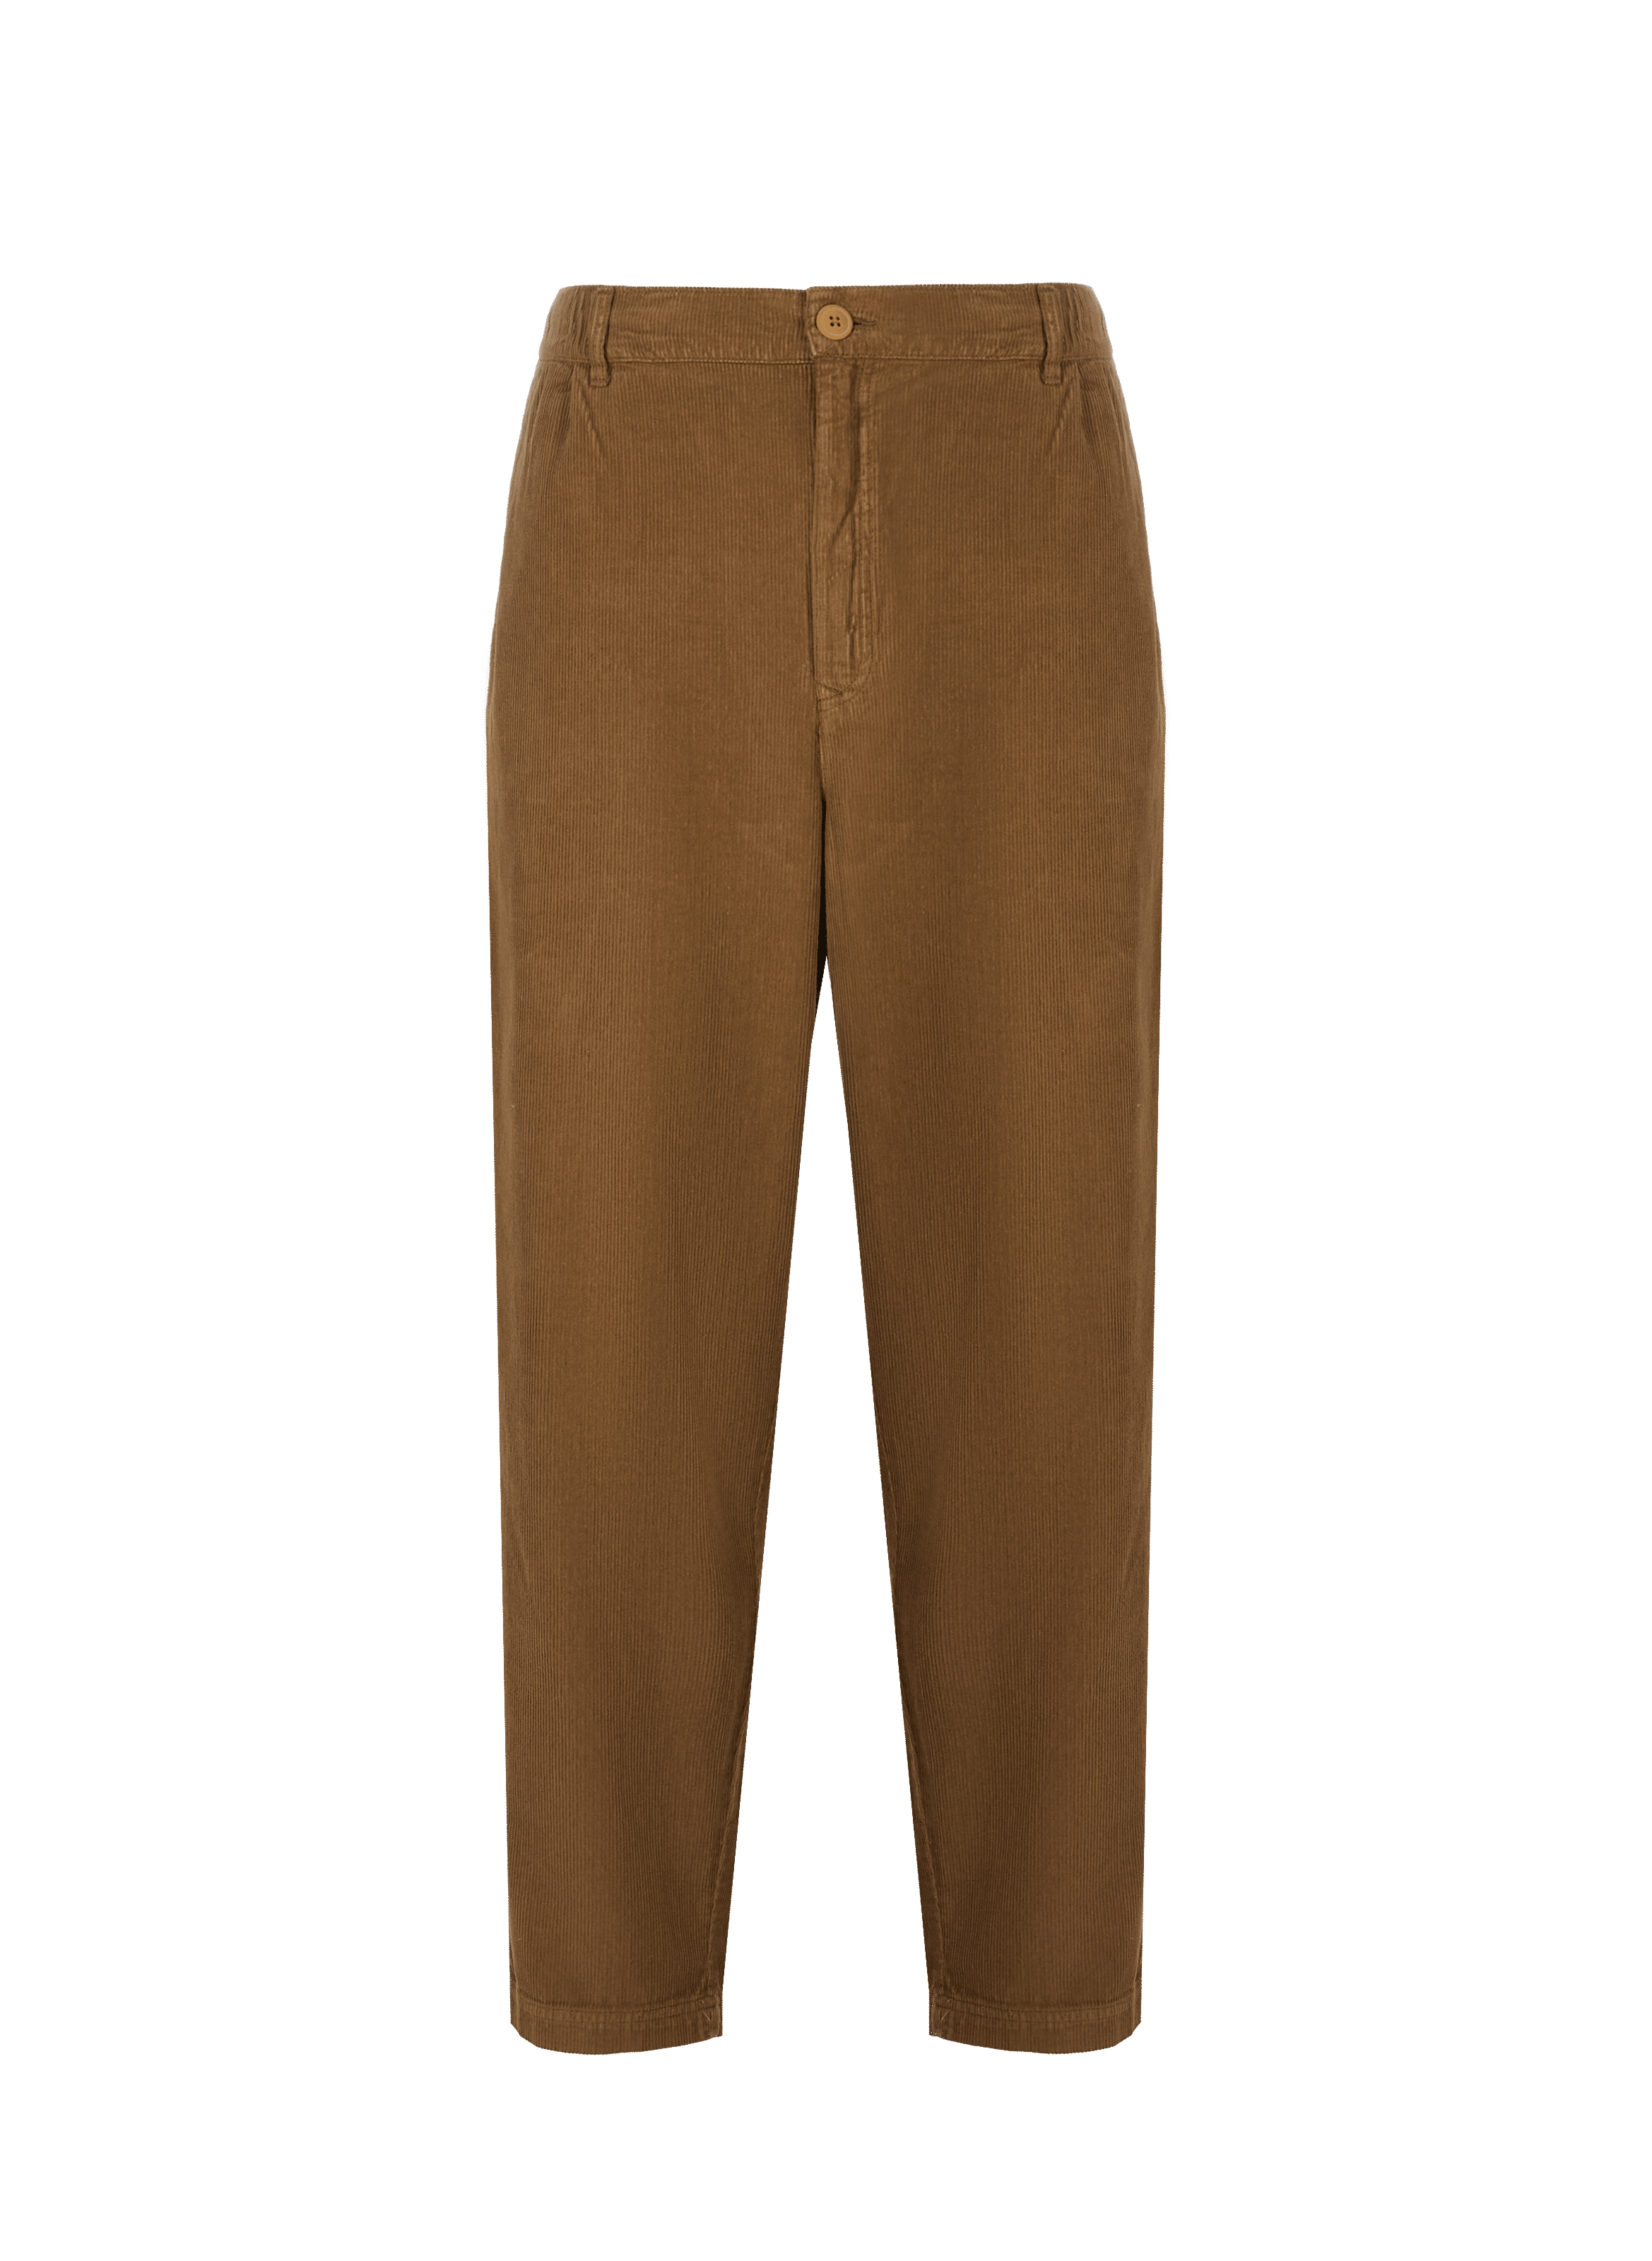 Gaubert cotton velvet pants